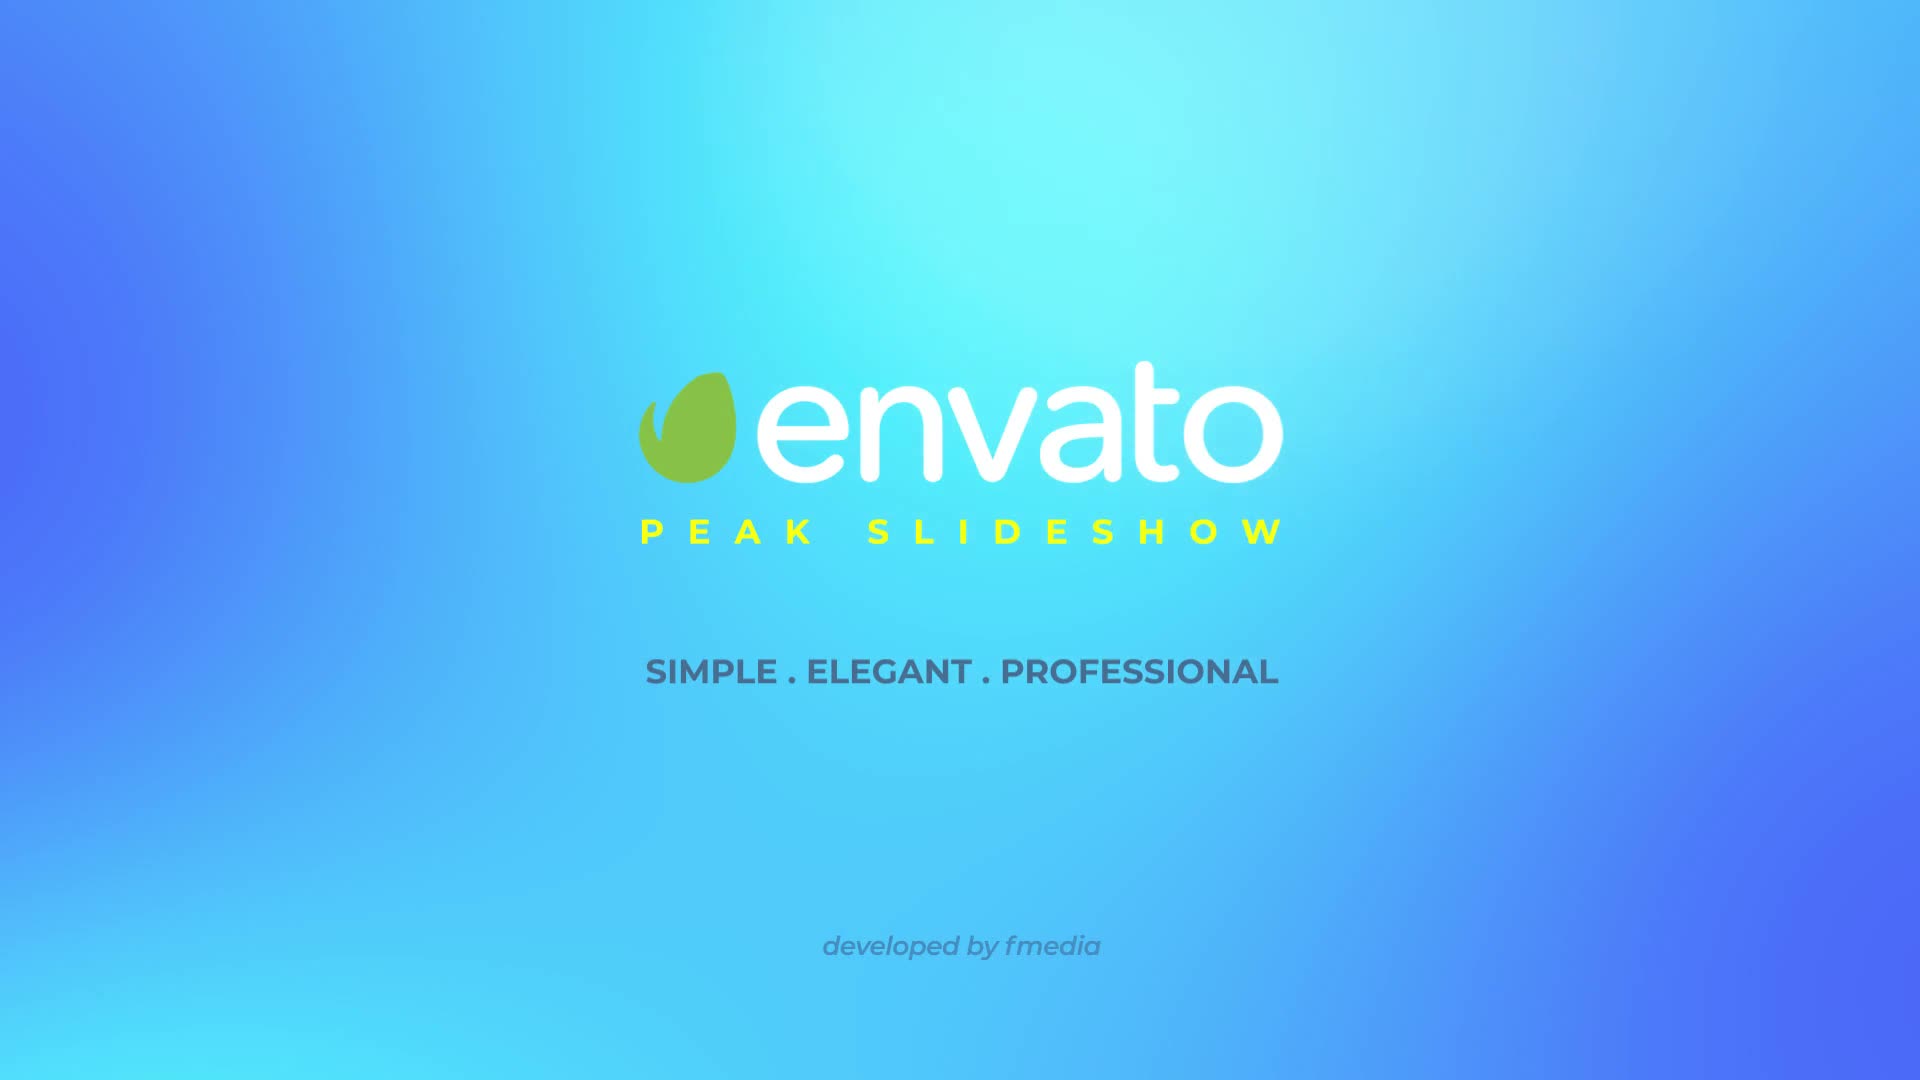 Peak Corporate slideshow – Premiere Pro Videohive 23897043 Premiere Pro Image 1